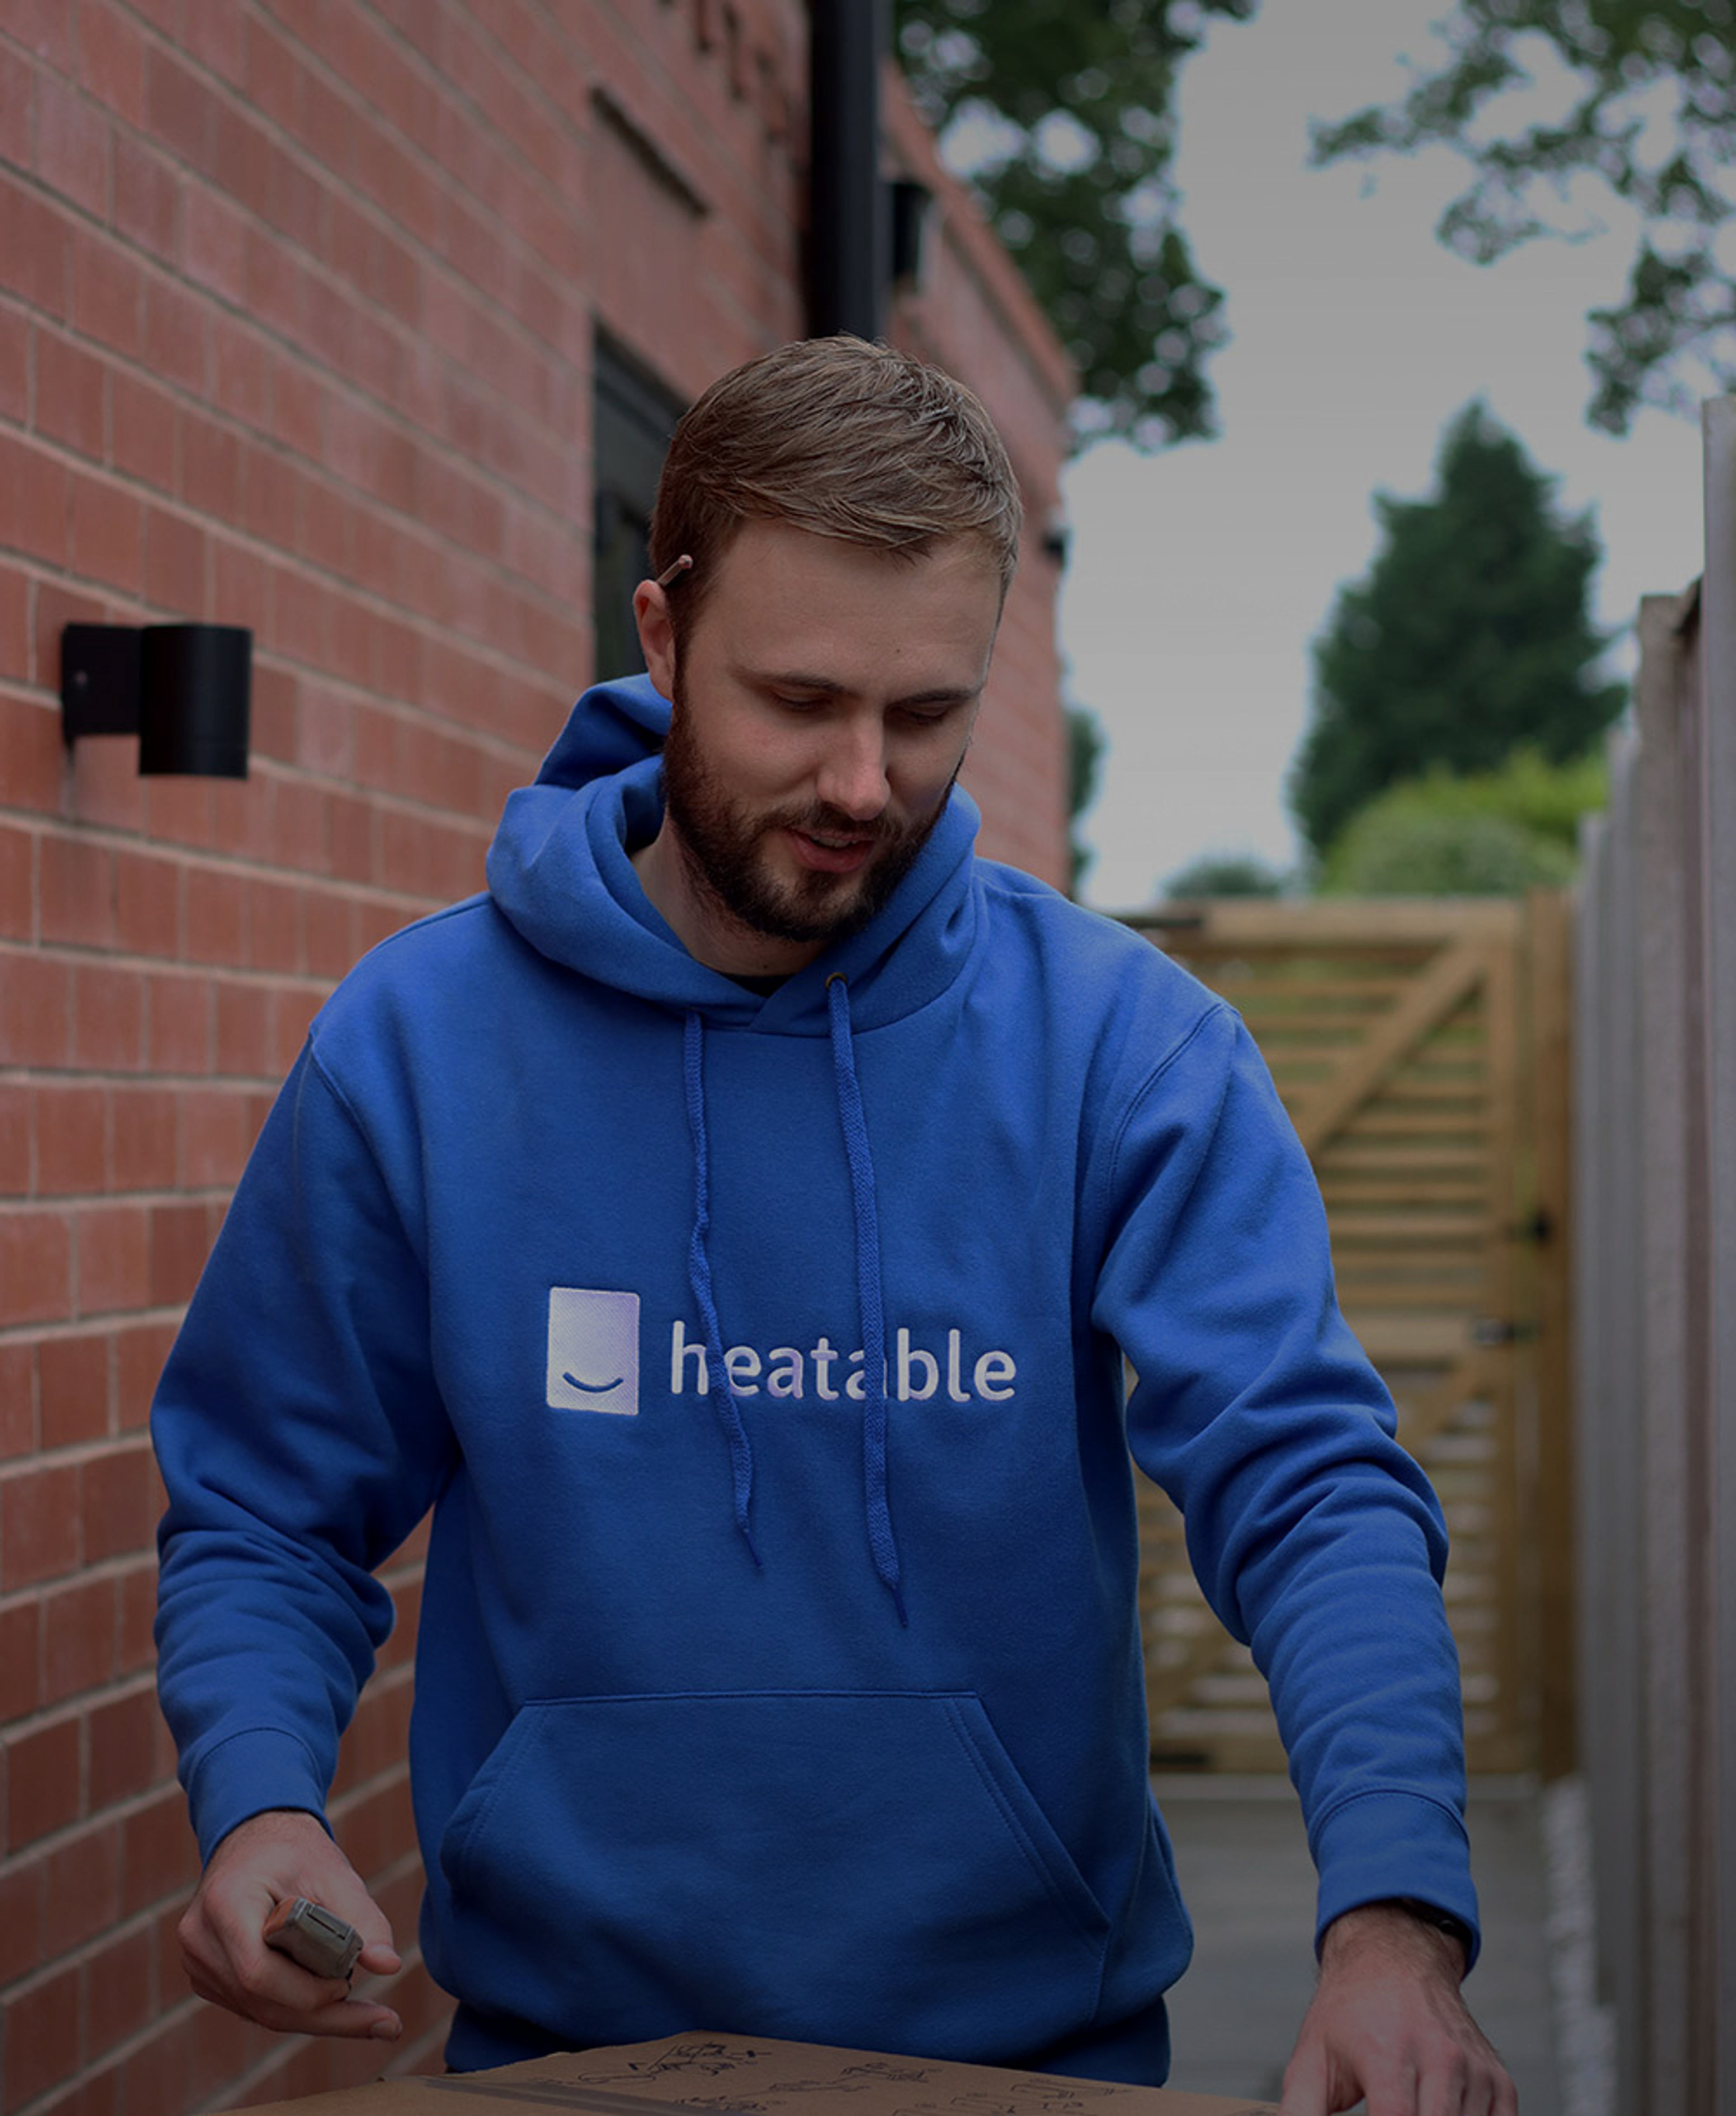 Heatable installer wearing a blue Heatable hoodie